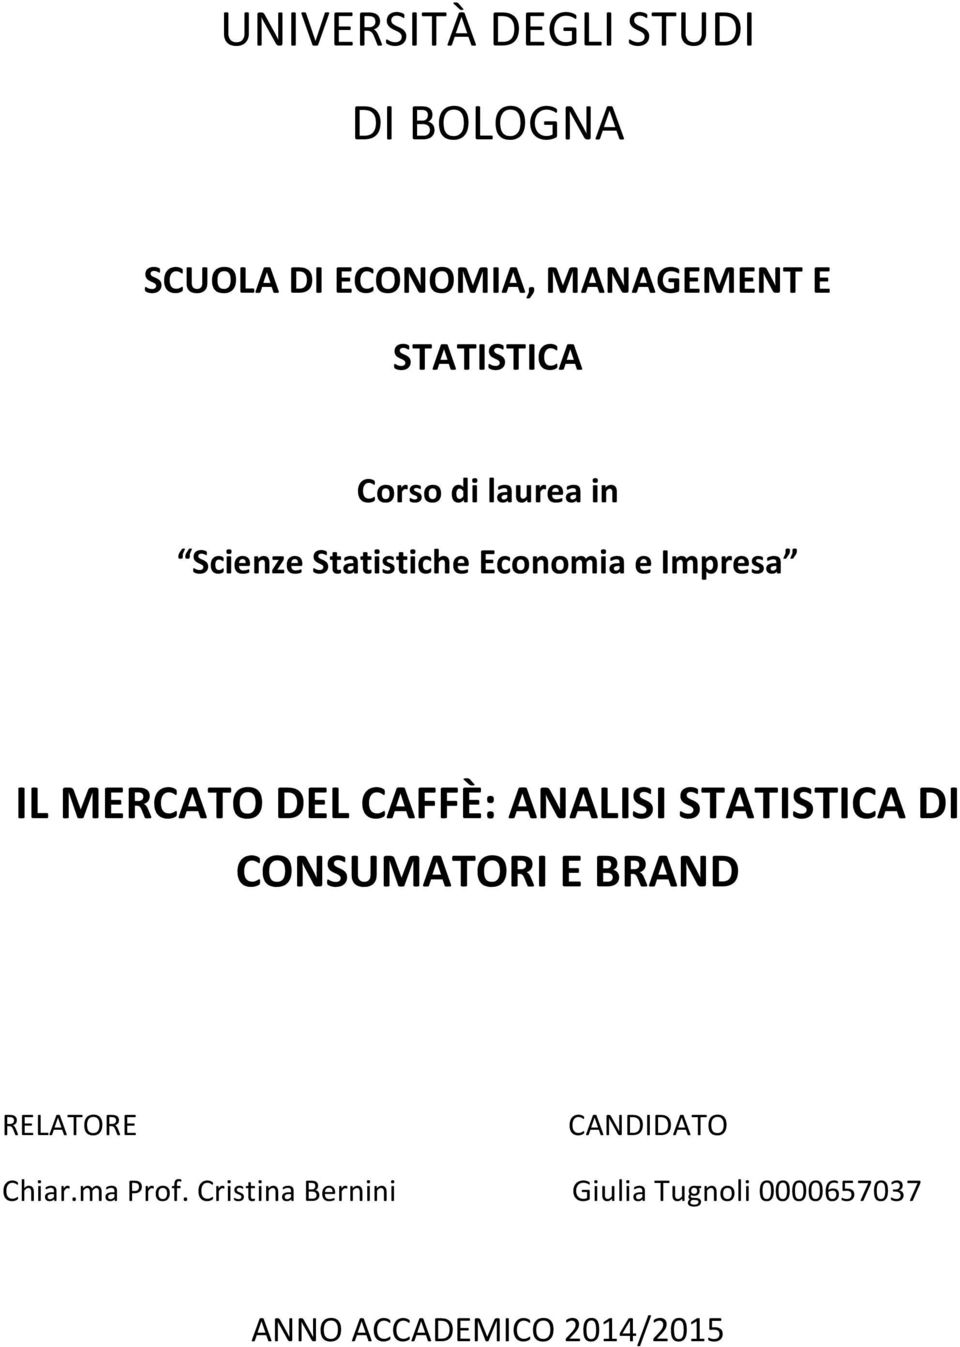 MERCATO DEL CAFFÈ: ANALISI STATISTICA DI CONSUMATORI E BRAND RELATORE